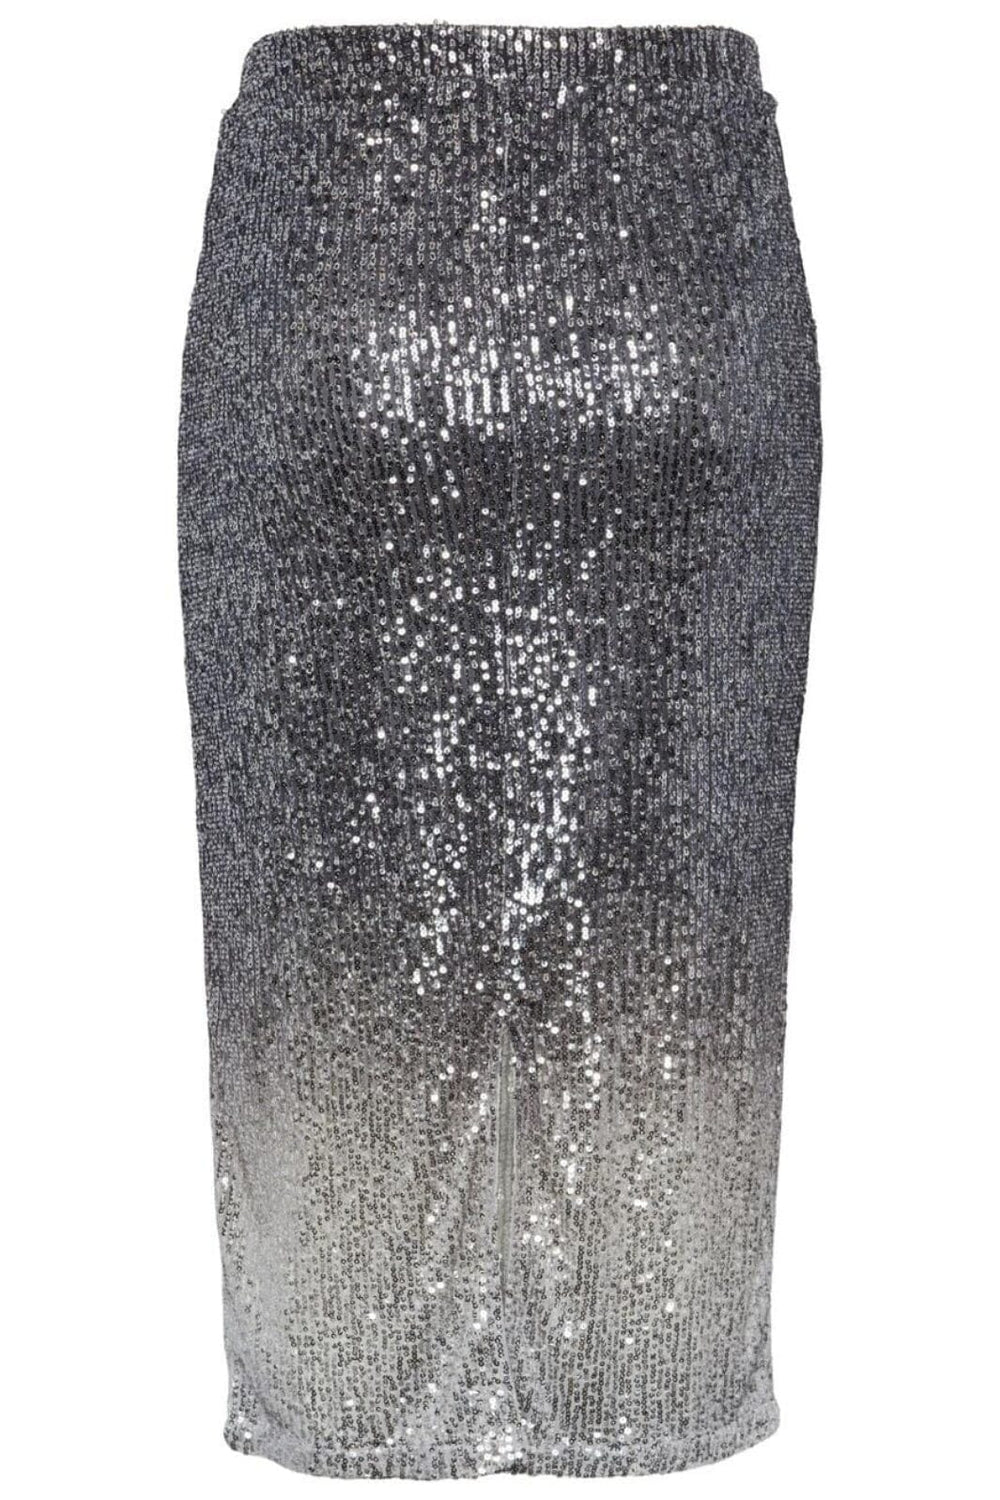 Pieces - Pcdelphia Pencil Slit Skirt - 4351333 Magnet Gradient Silver Sequins Nederdele 